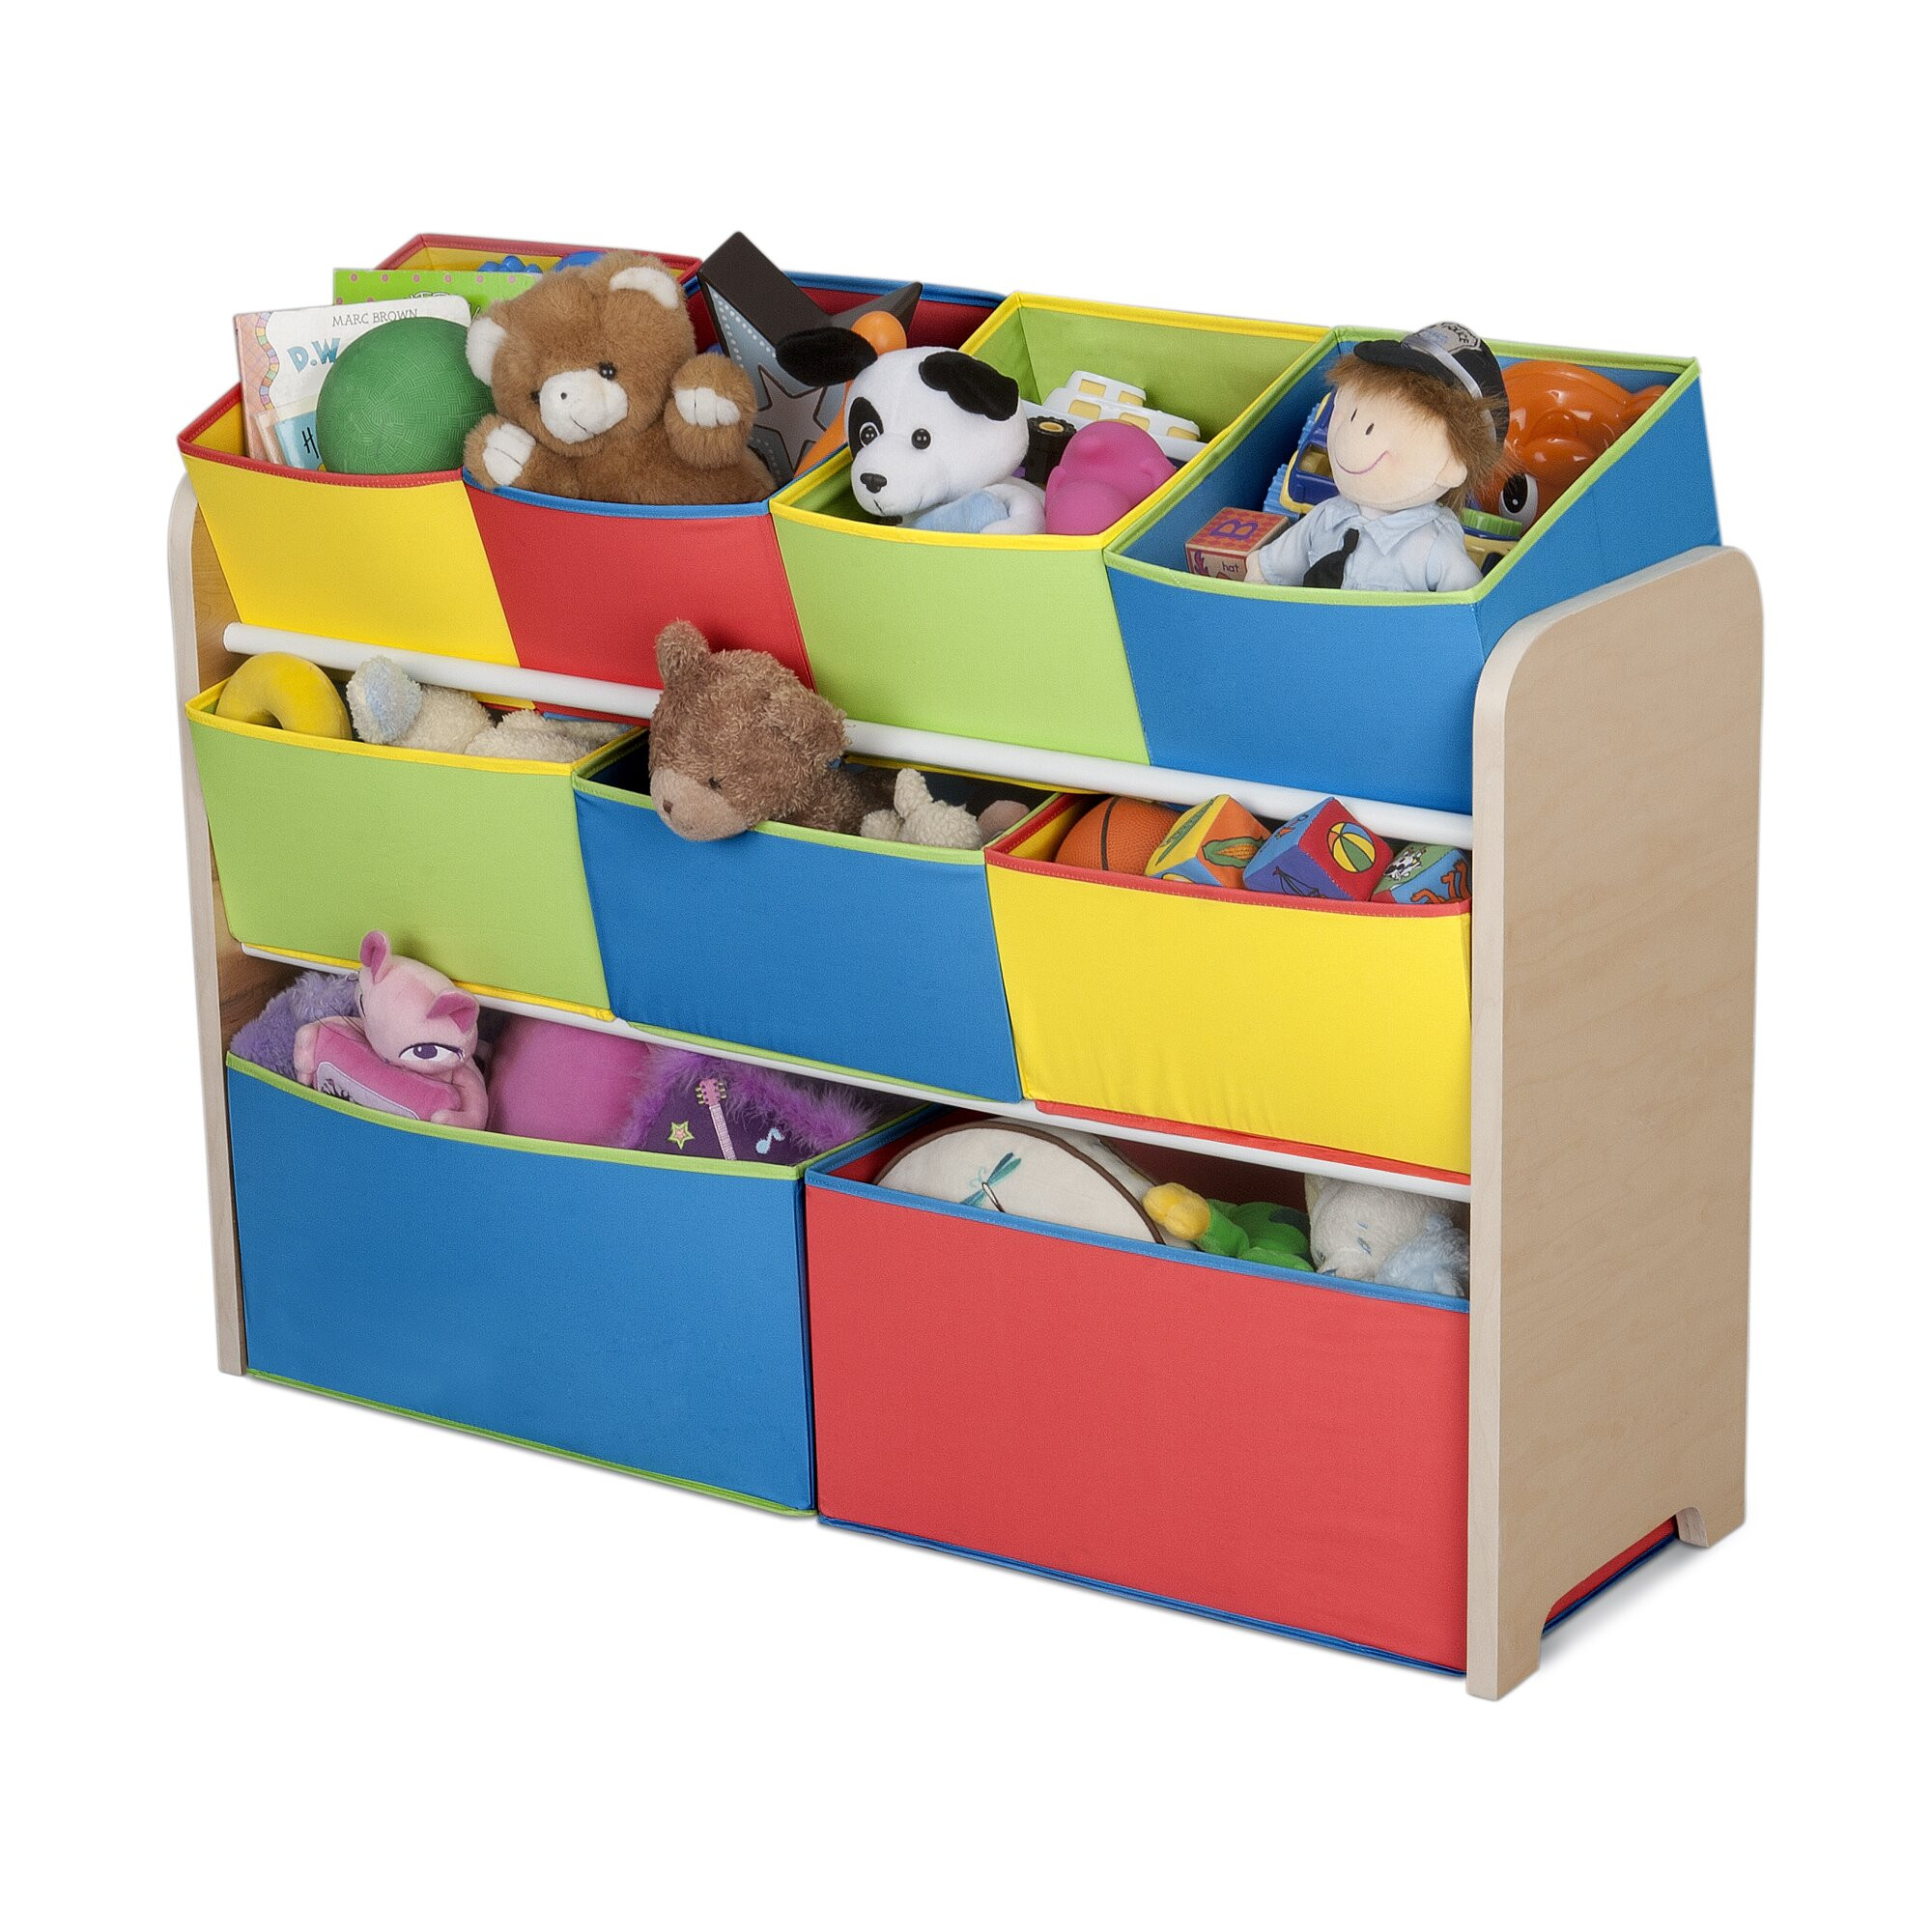 Kids Storage Organizer
 Delta Children Multi Color Deluxe Toy Organizer with Bins